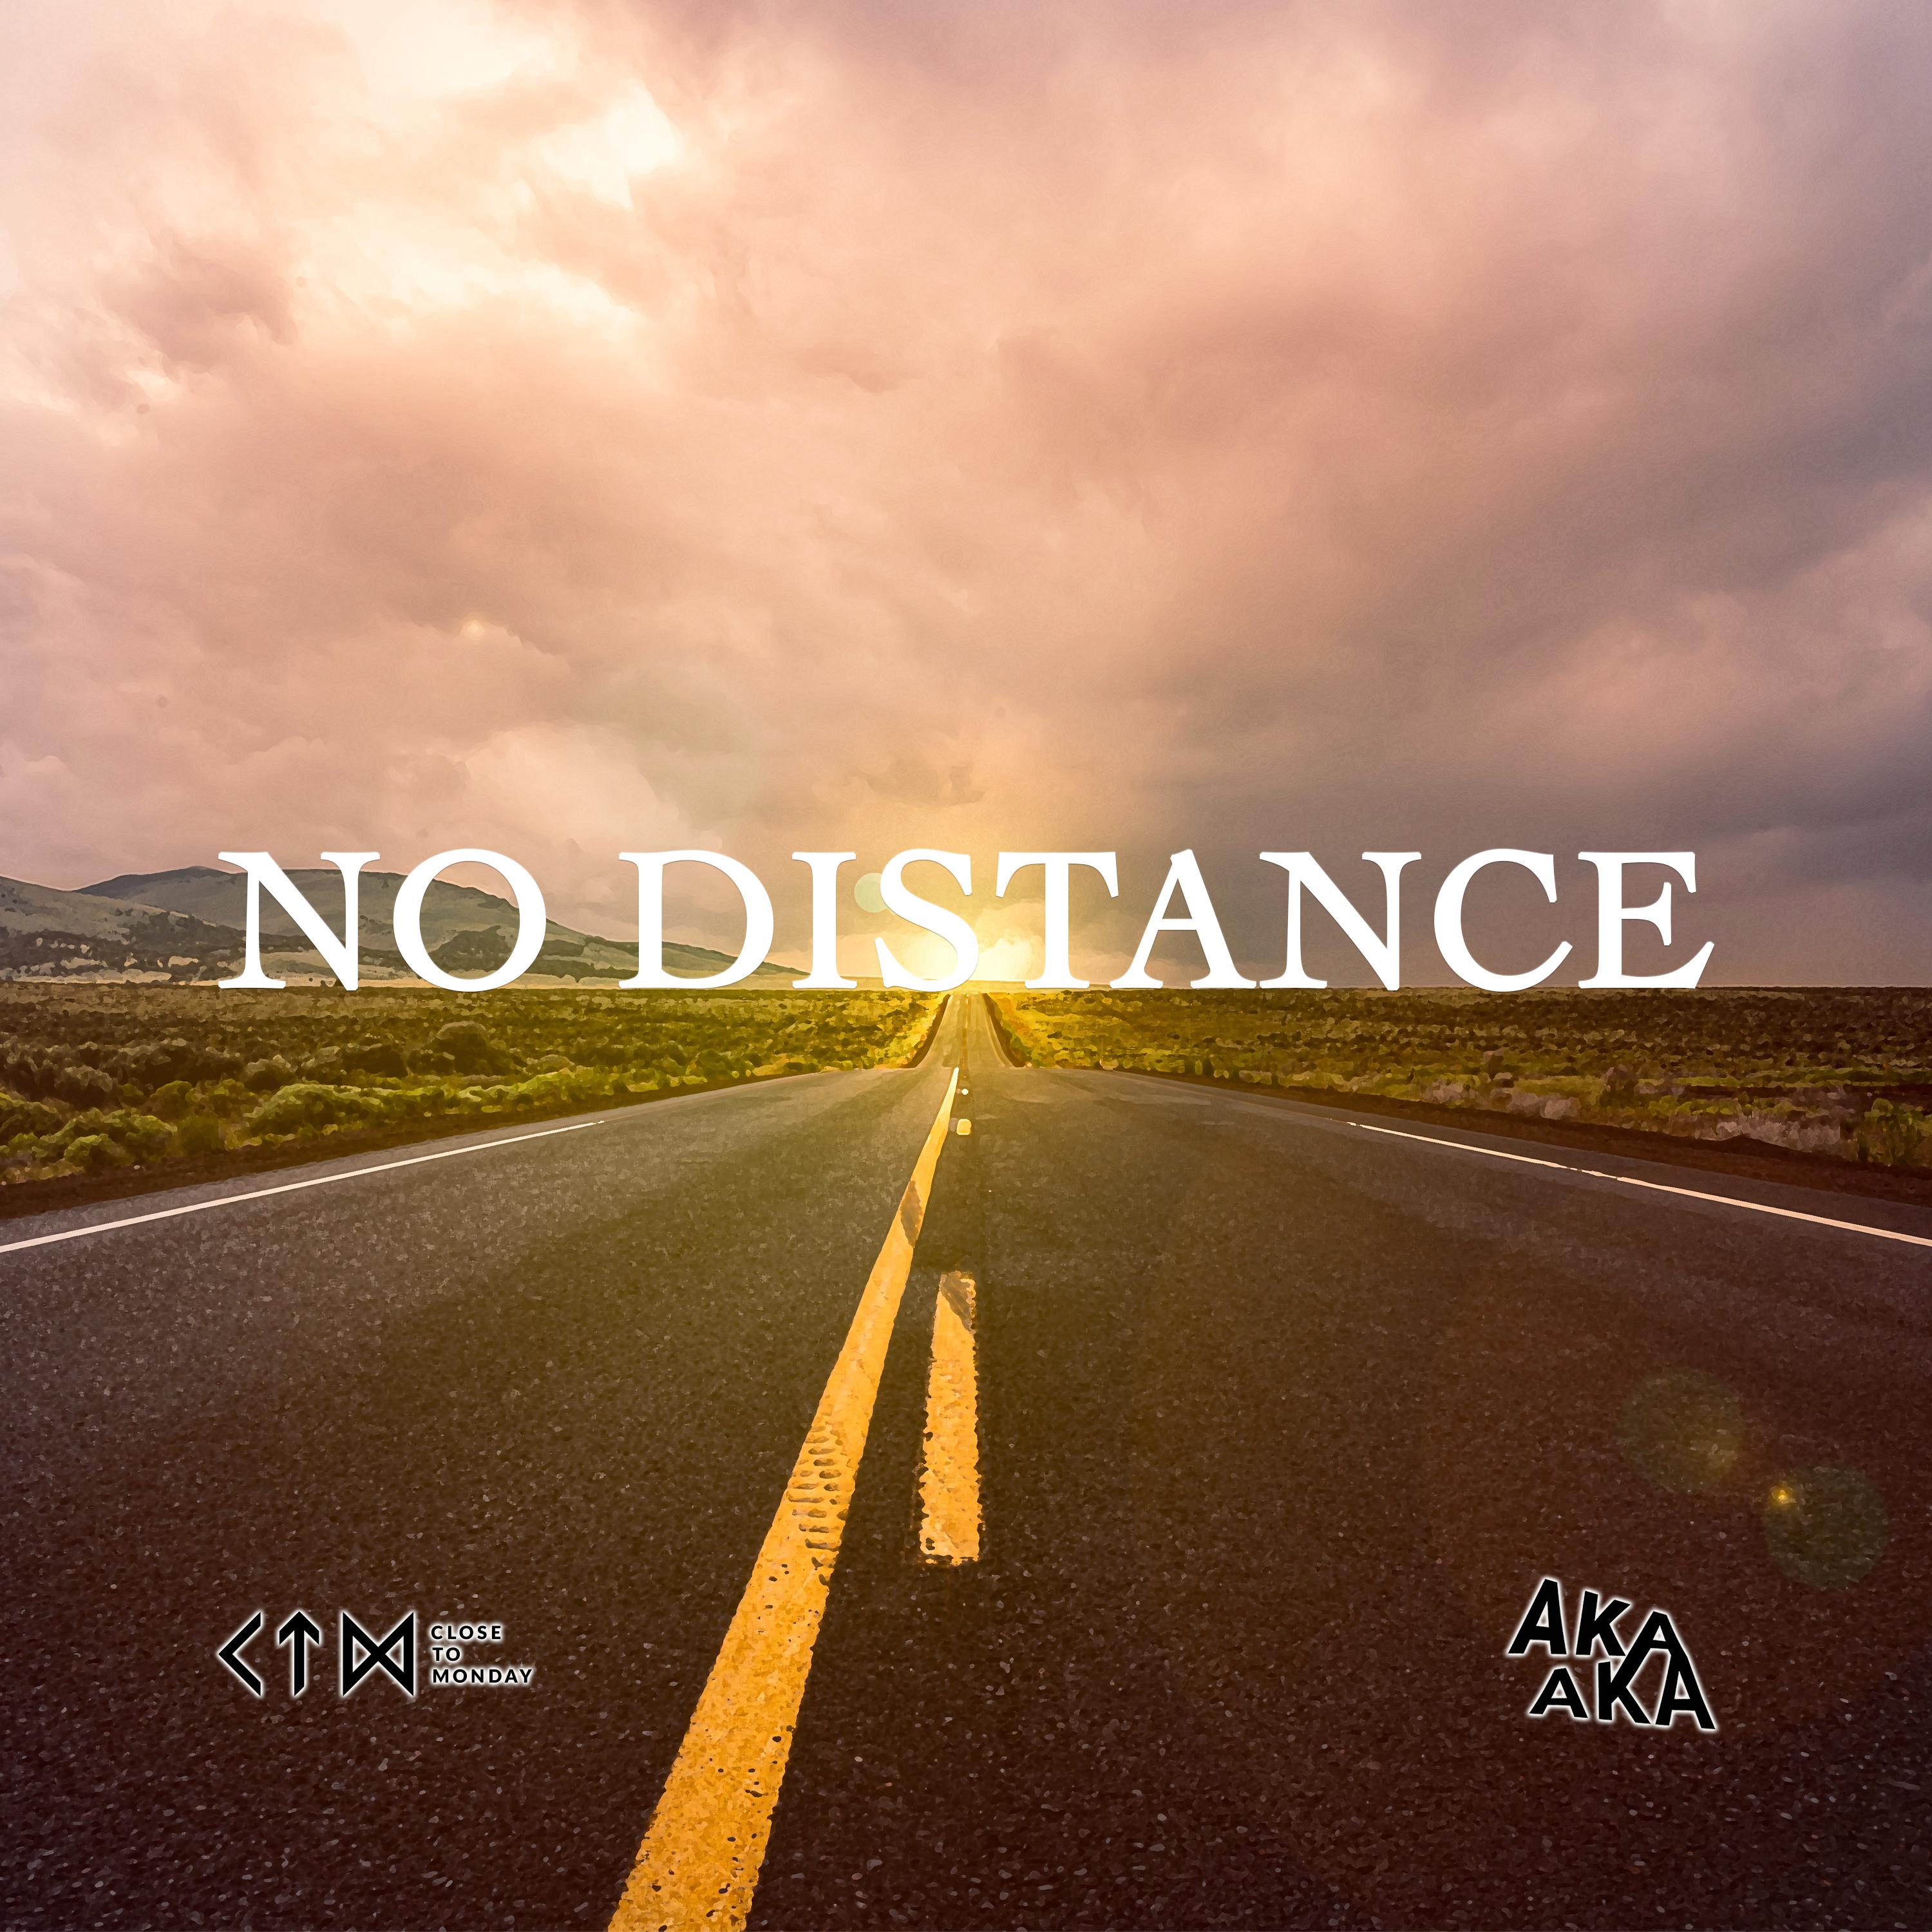 AKA AKA - No Distance